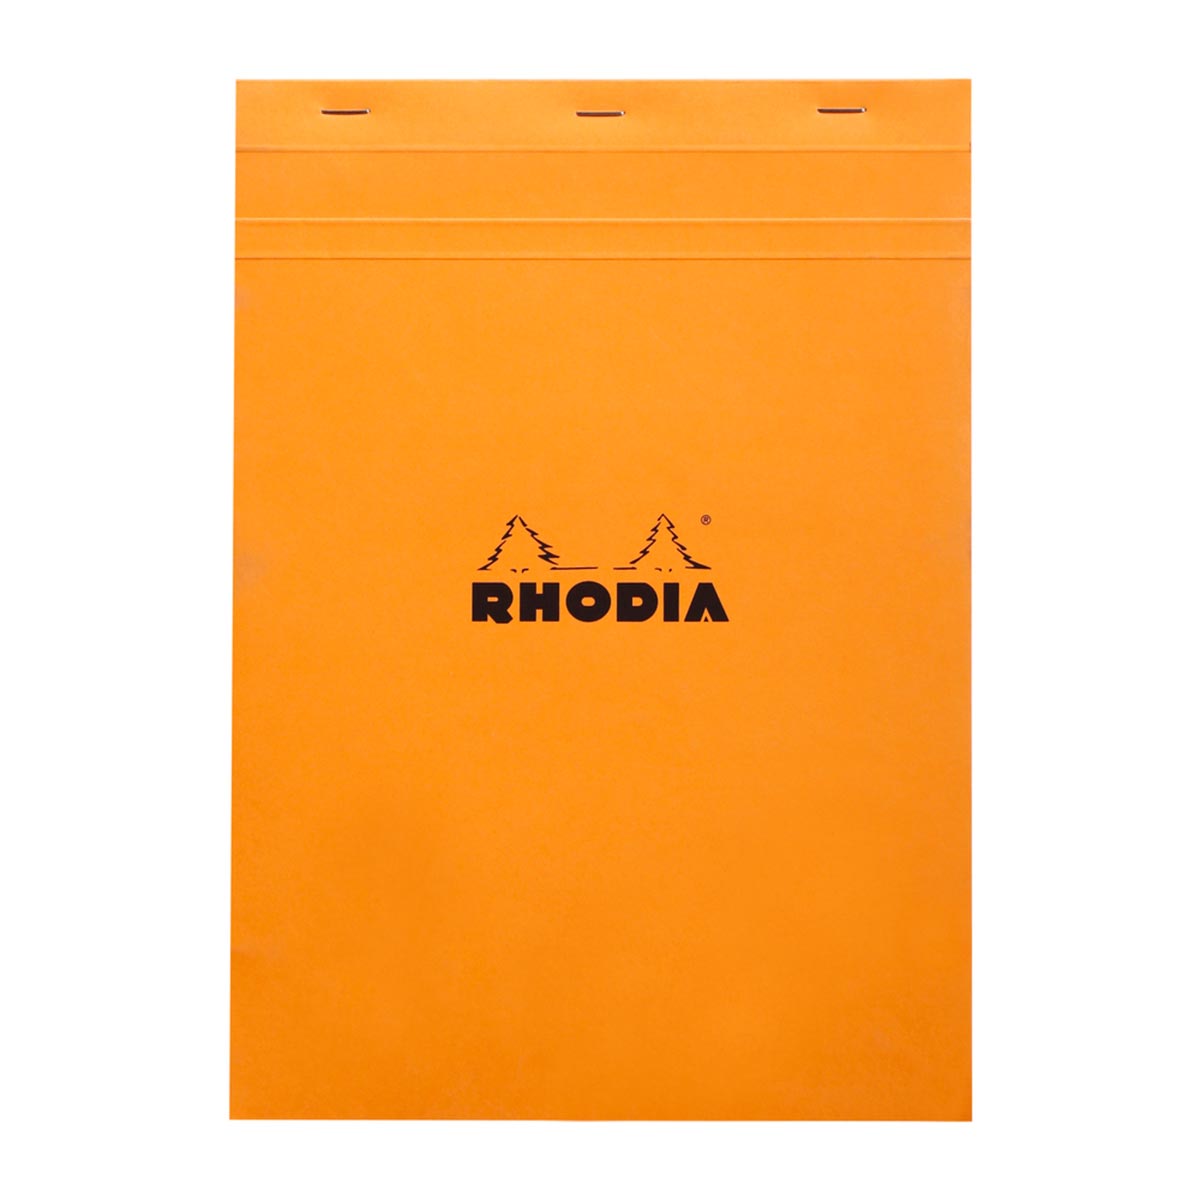 Rhodia - Notizblock A4 No. 18 kariert, orange